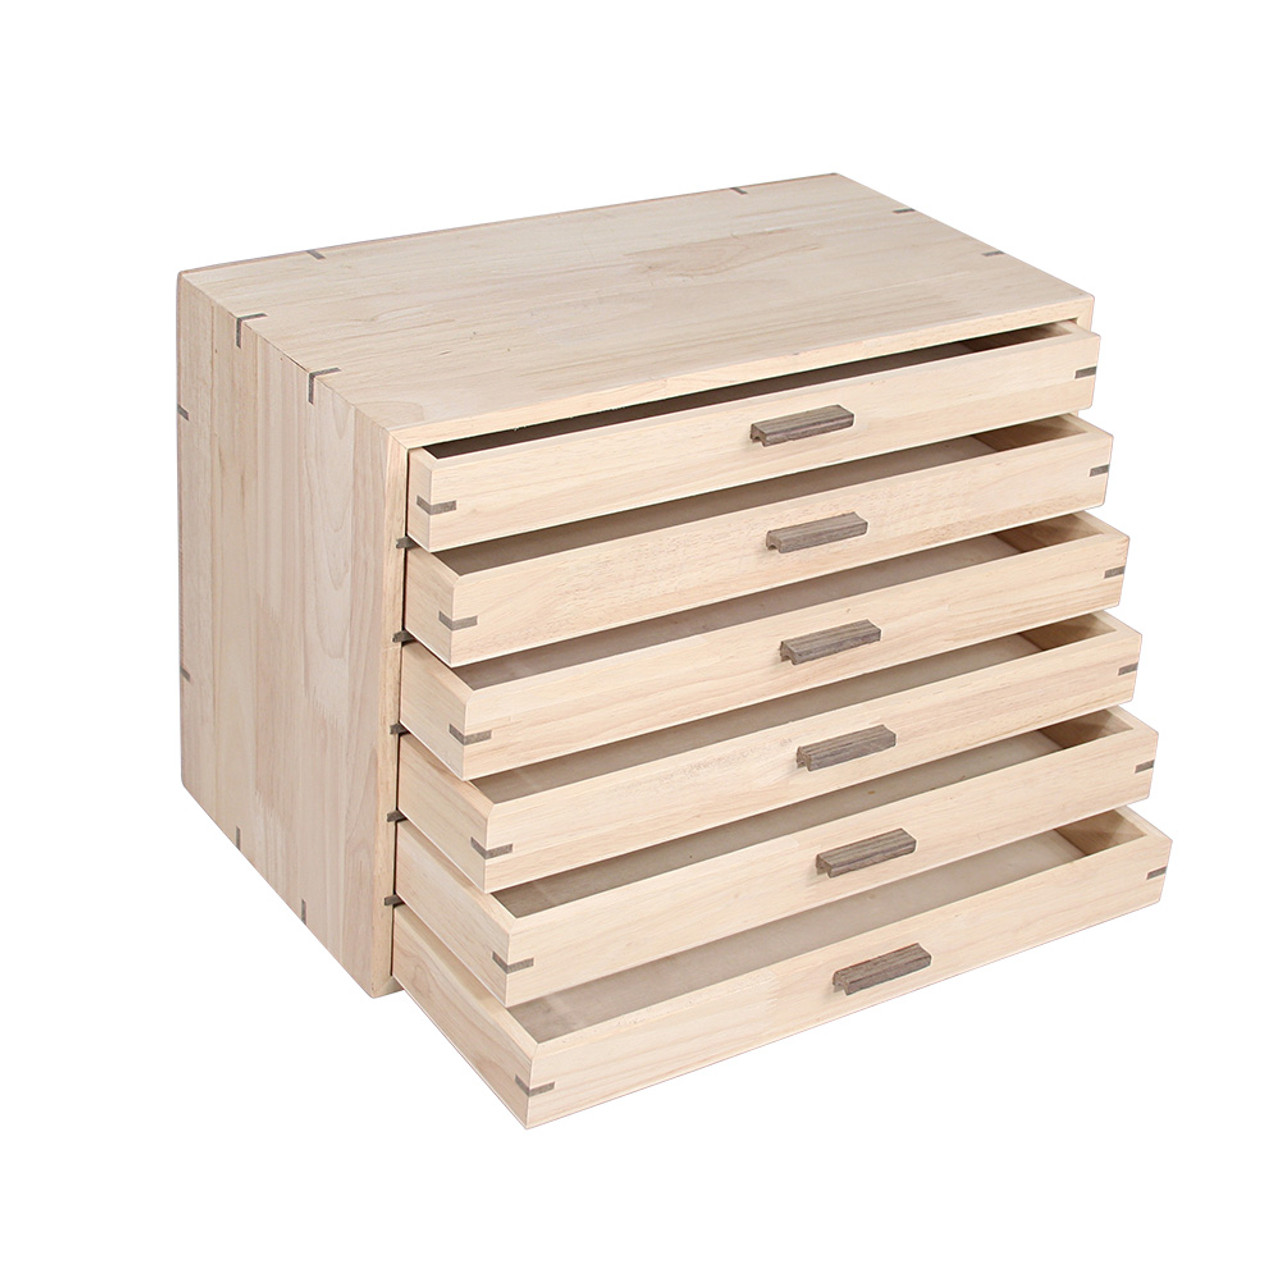 Jewelry storage organizer w/9 trays, 8 1/2 x 14 5/8 x 16 1/4H - Eds Box  & Supply Co.